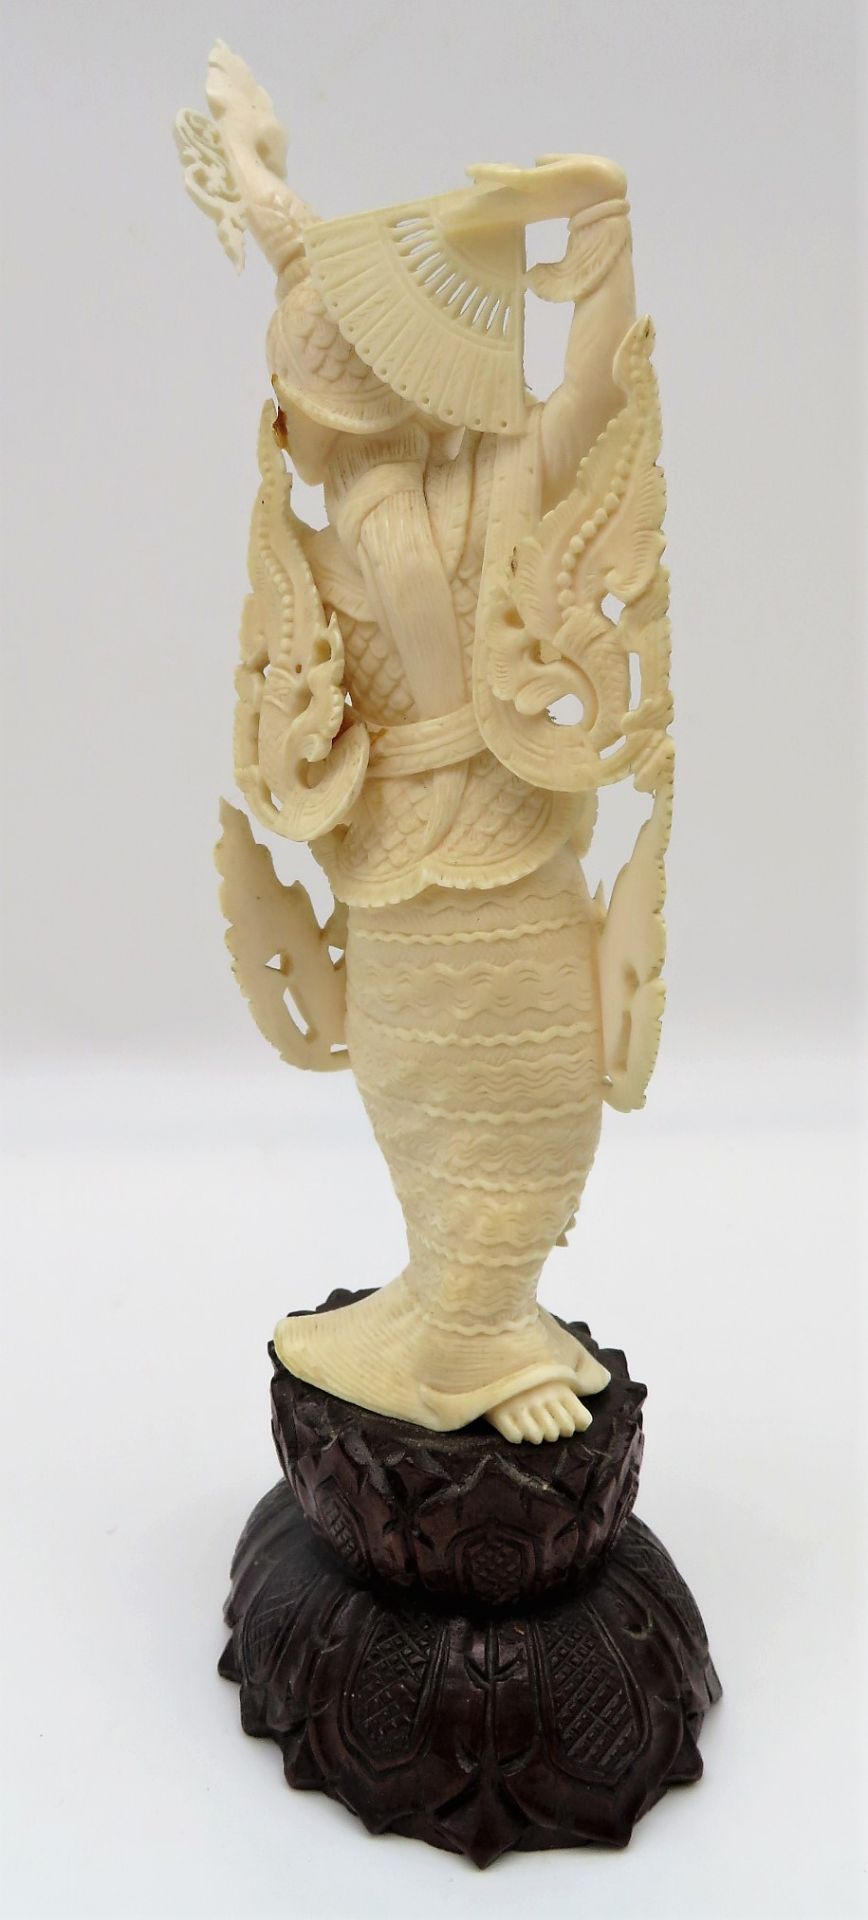 Tänzerin, Indonesien, Bein fein geschnitzt, besch., geschnitzter Holzsockel, h 22 cm, d 8 cm. - Bild 2 aus 2